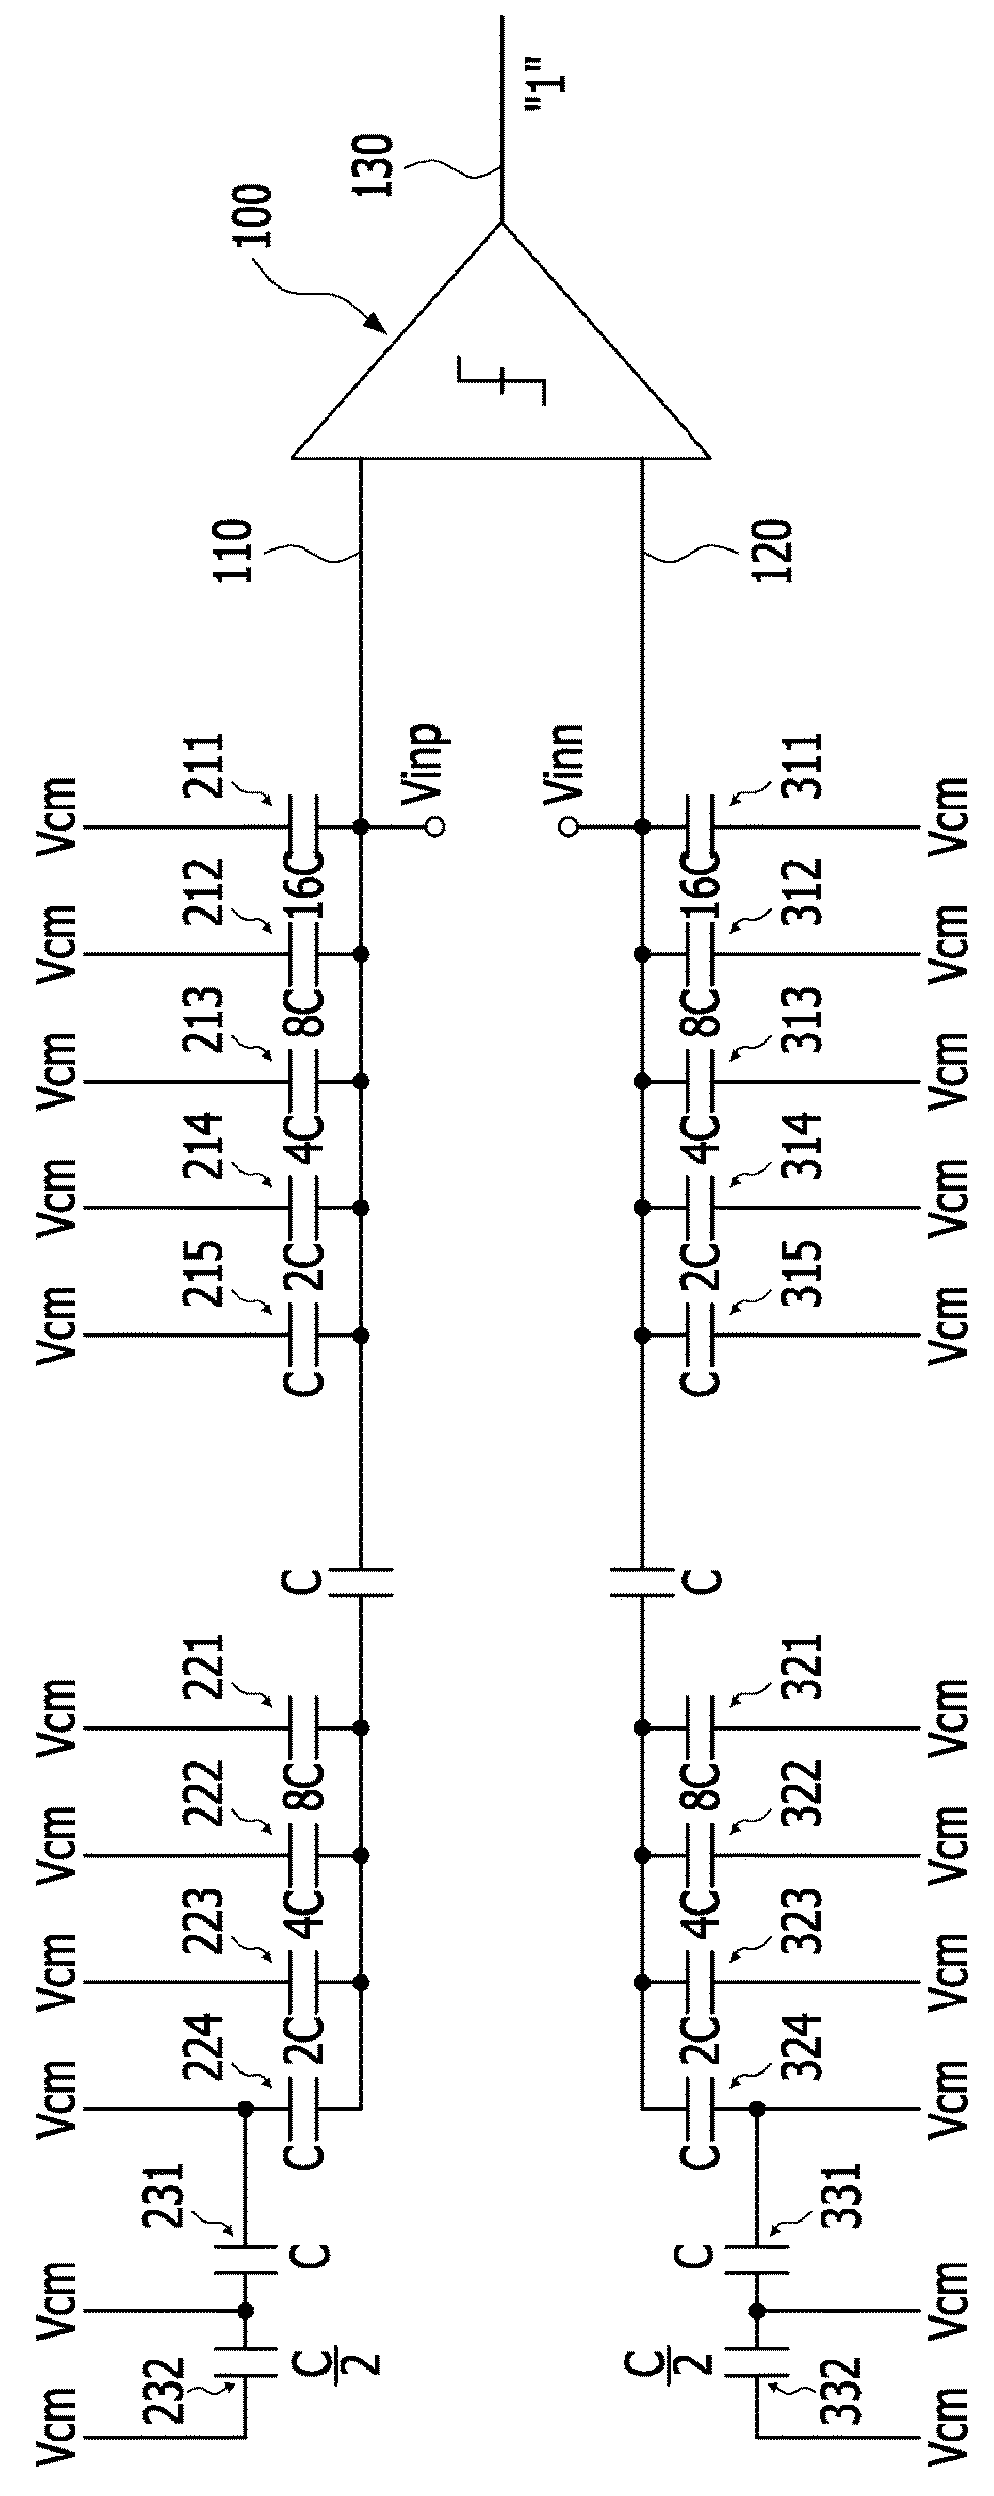 Successive approximation register analog-digital converter having a split-capacitor based digital-analog converter